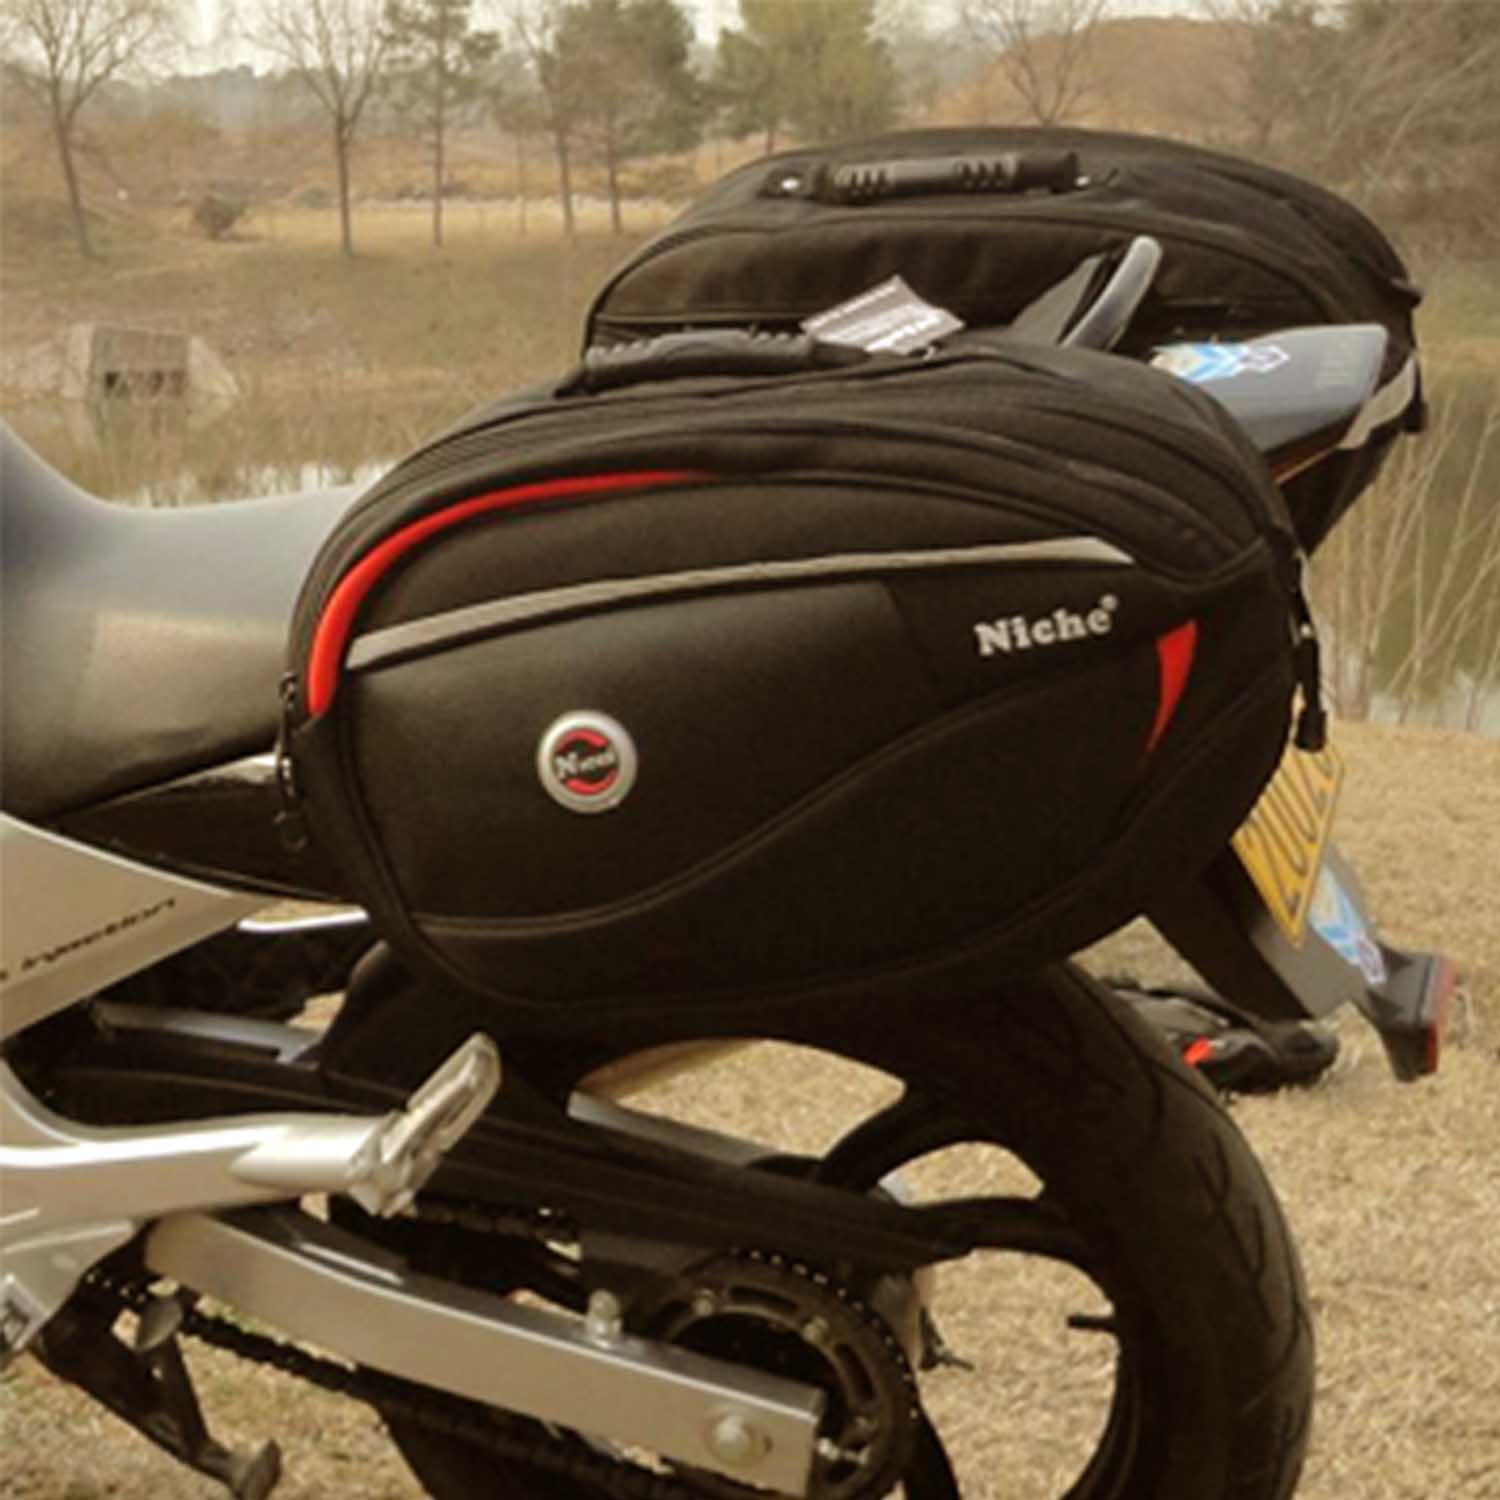 podemos fazer bolsas de motocicleta personalizadas, bolsas de selim, bolsas de assento, alforjes, bolsa lateral, material impermeável.